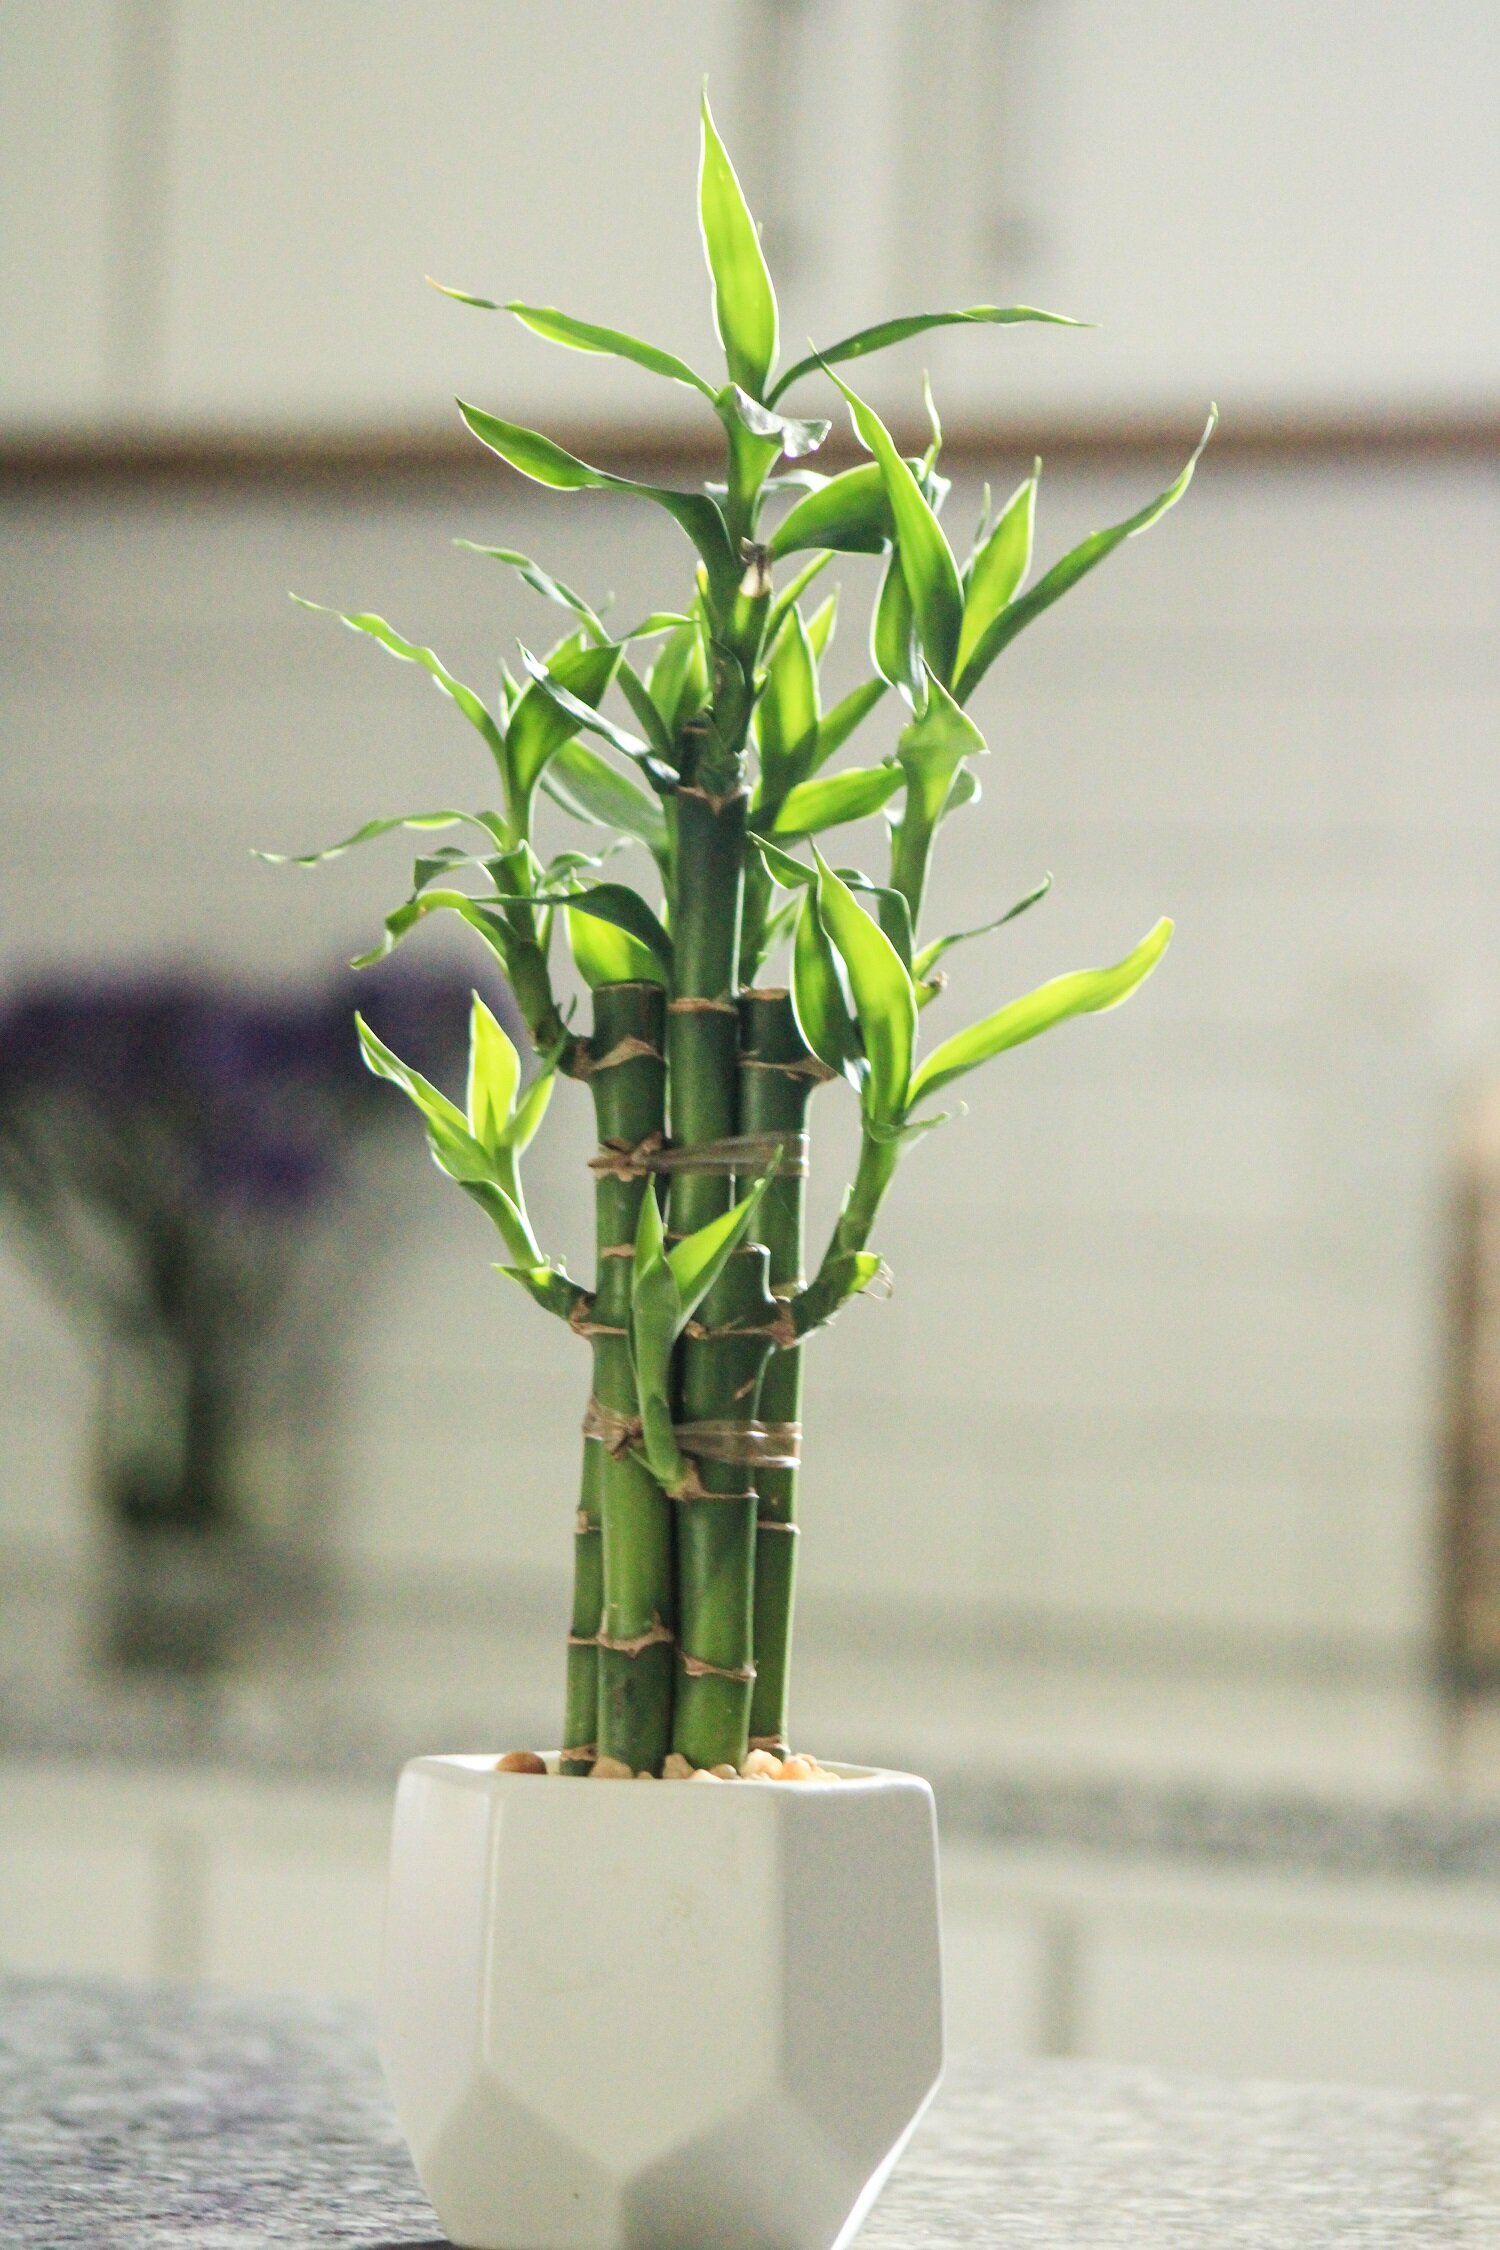 Lucky Bamboo or Dracaena Sanderiana